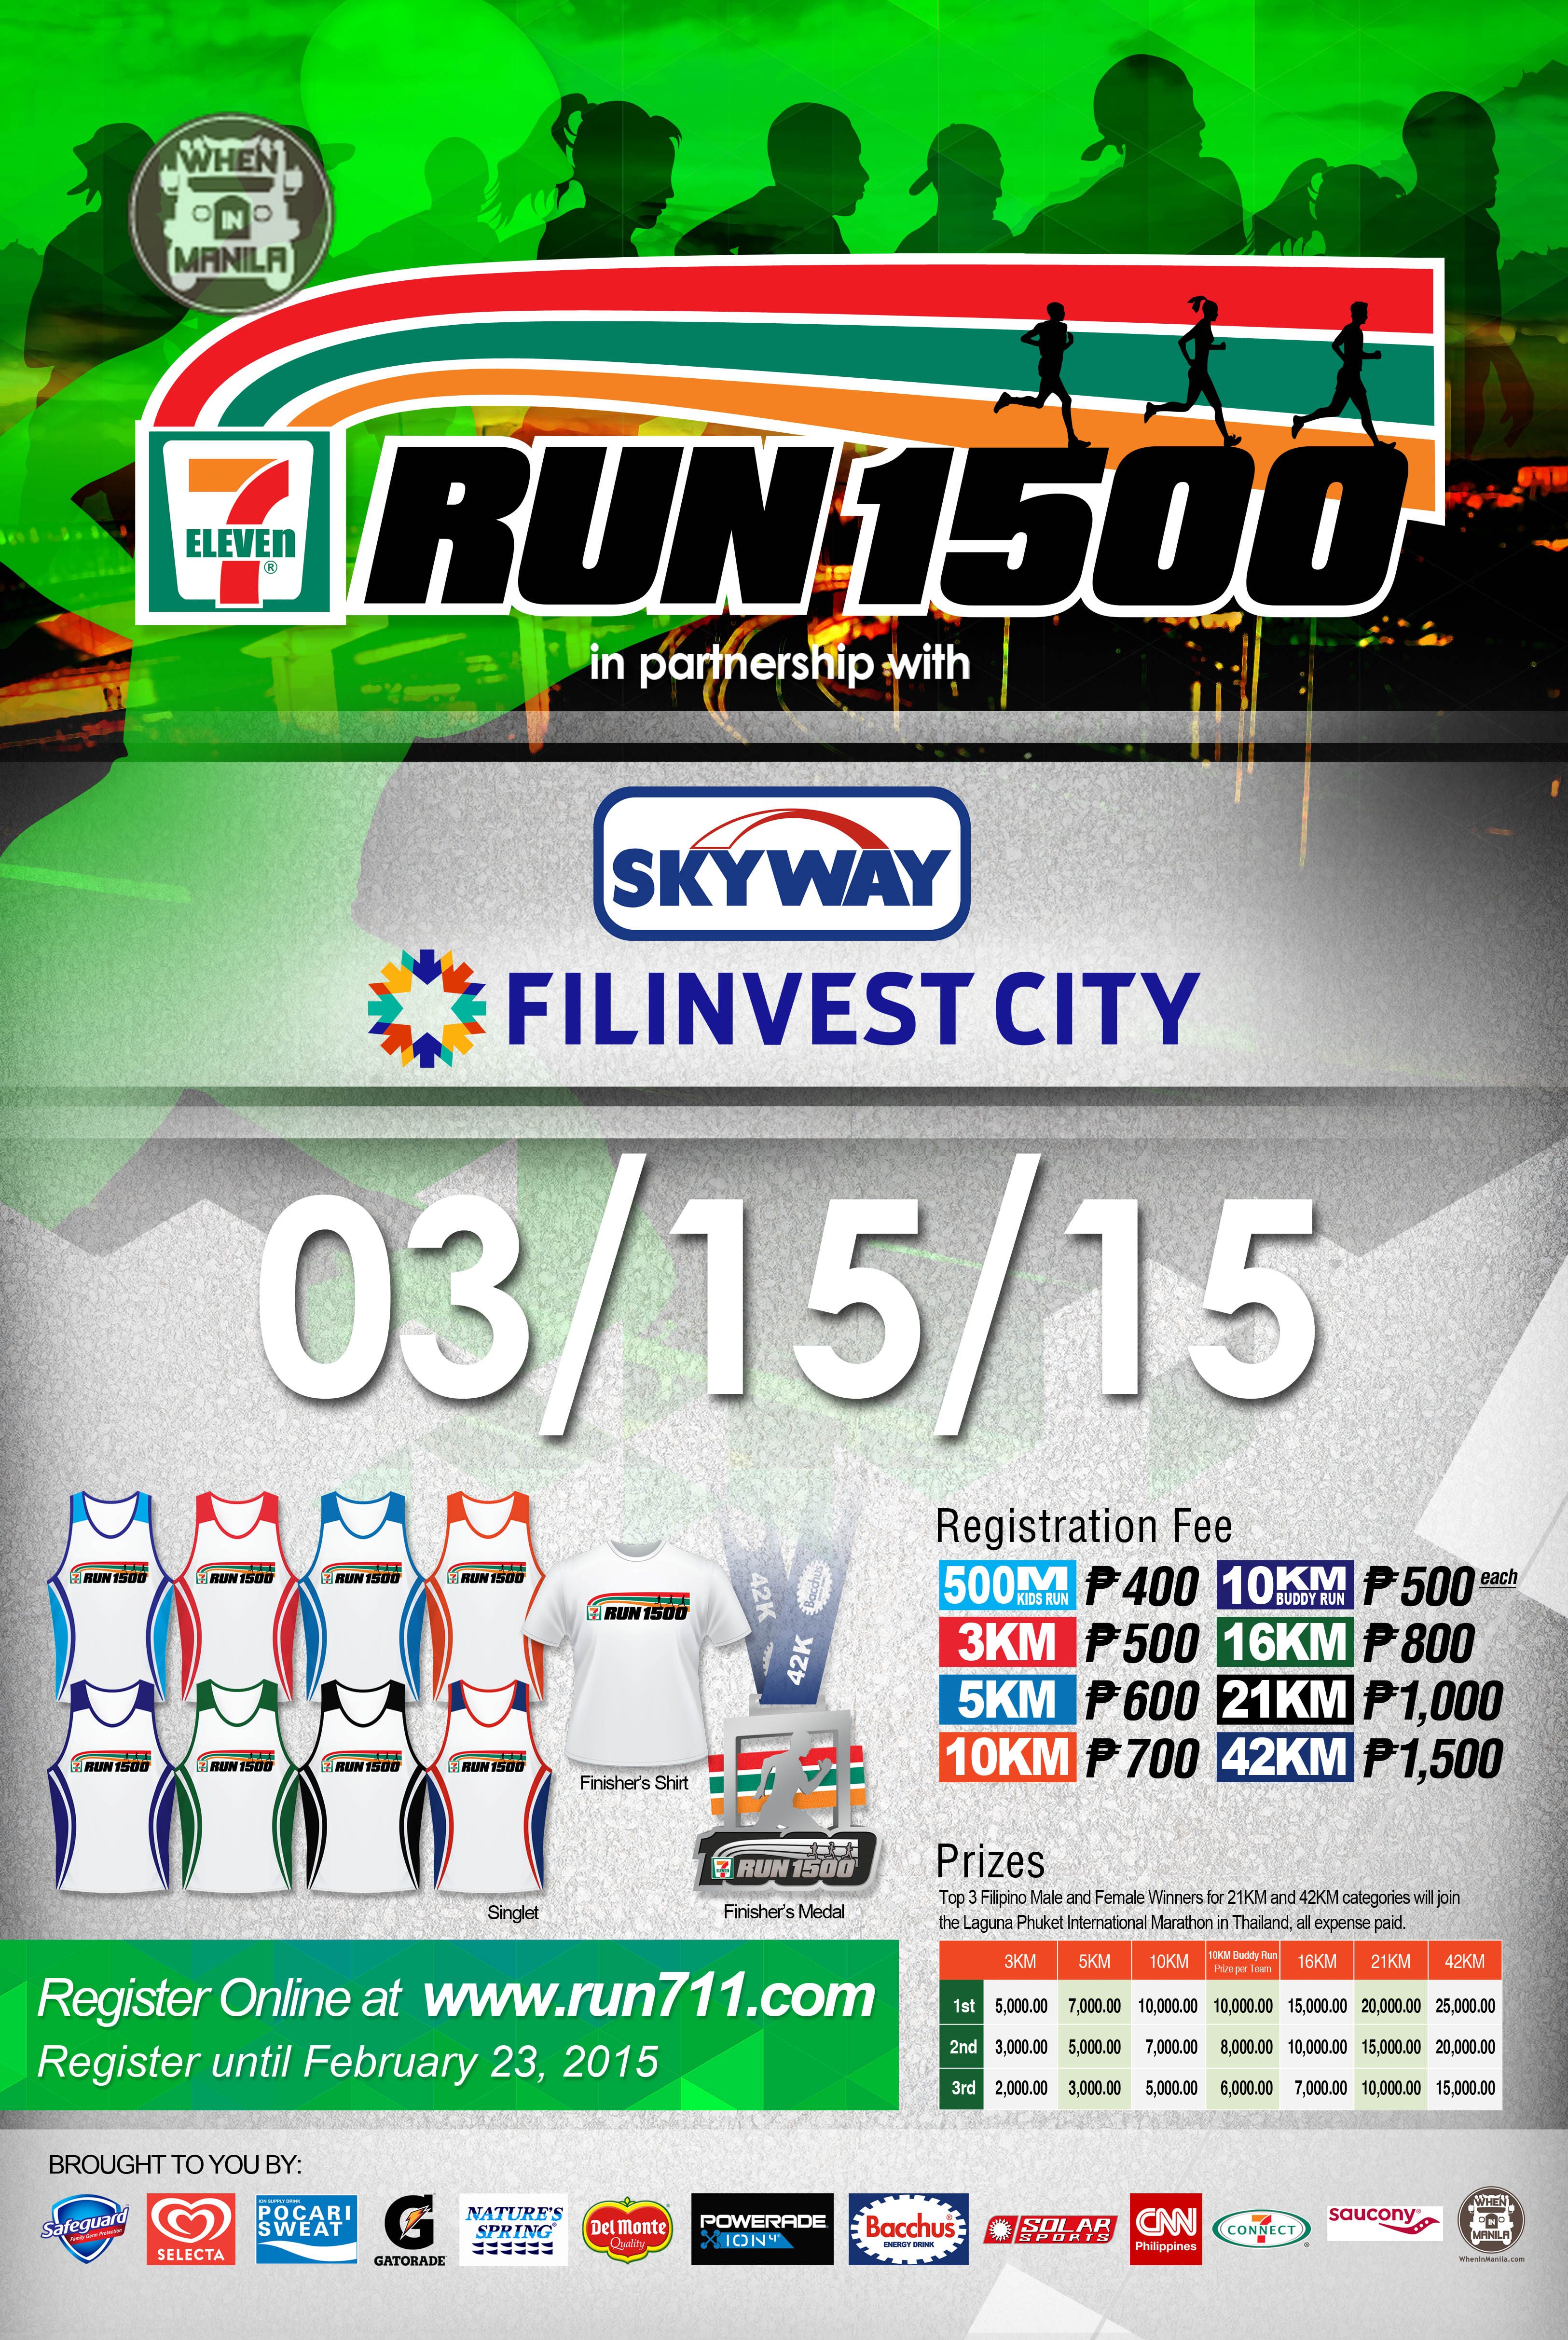 When in Manila 7 Eleven Run1500 poster